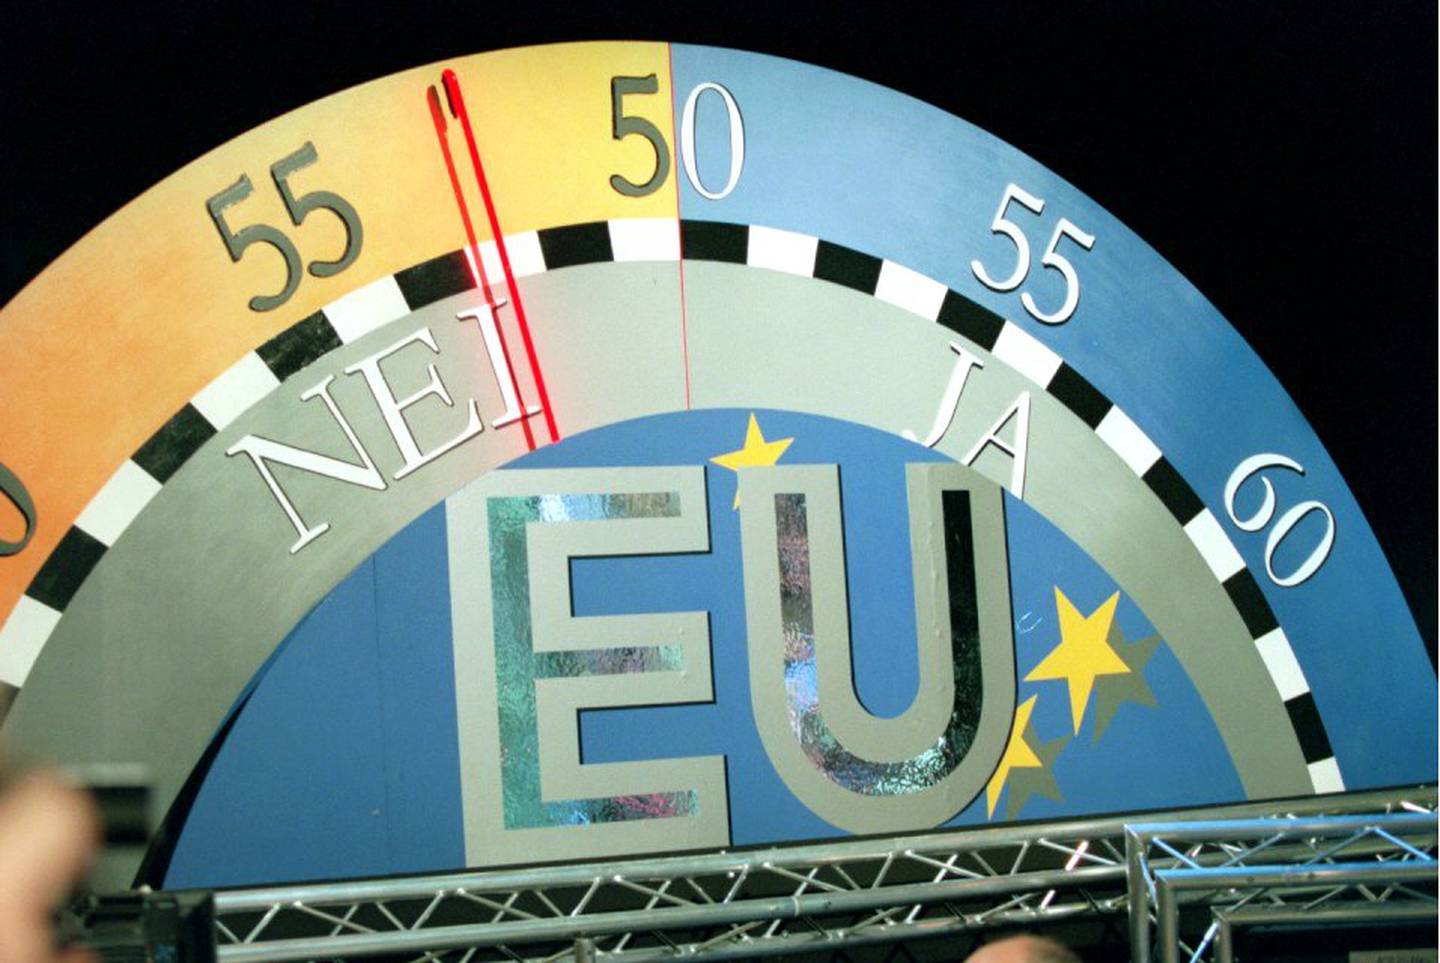 EU-barometeret i NRK-studio viste en Nei-seier med 53% mot Ja-sidens 47% på den store dagen i 1994.